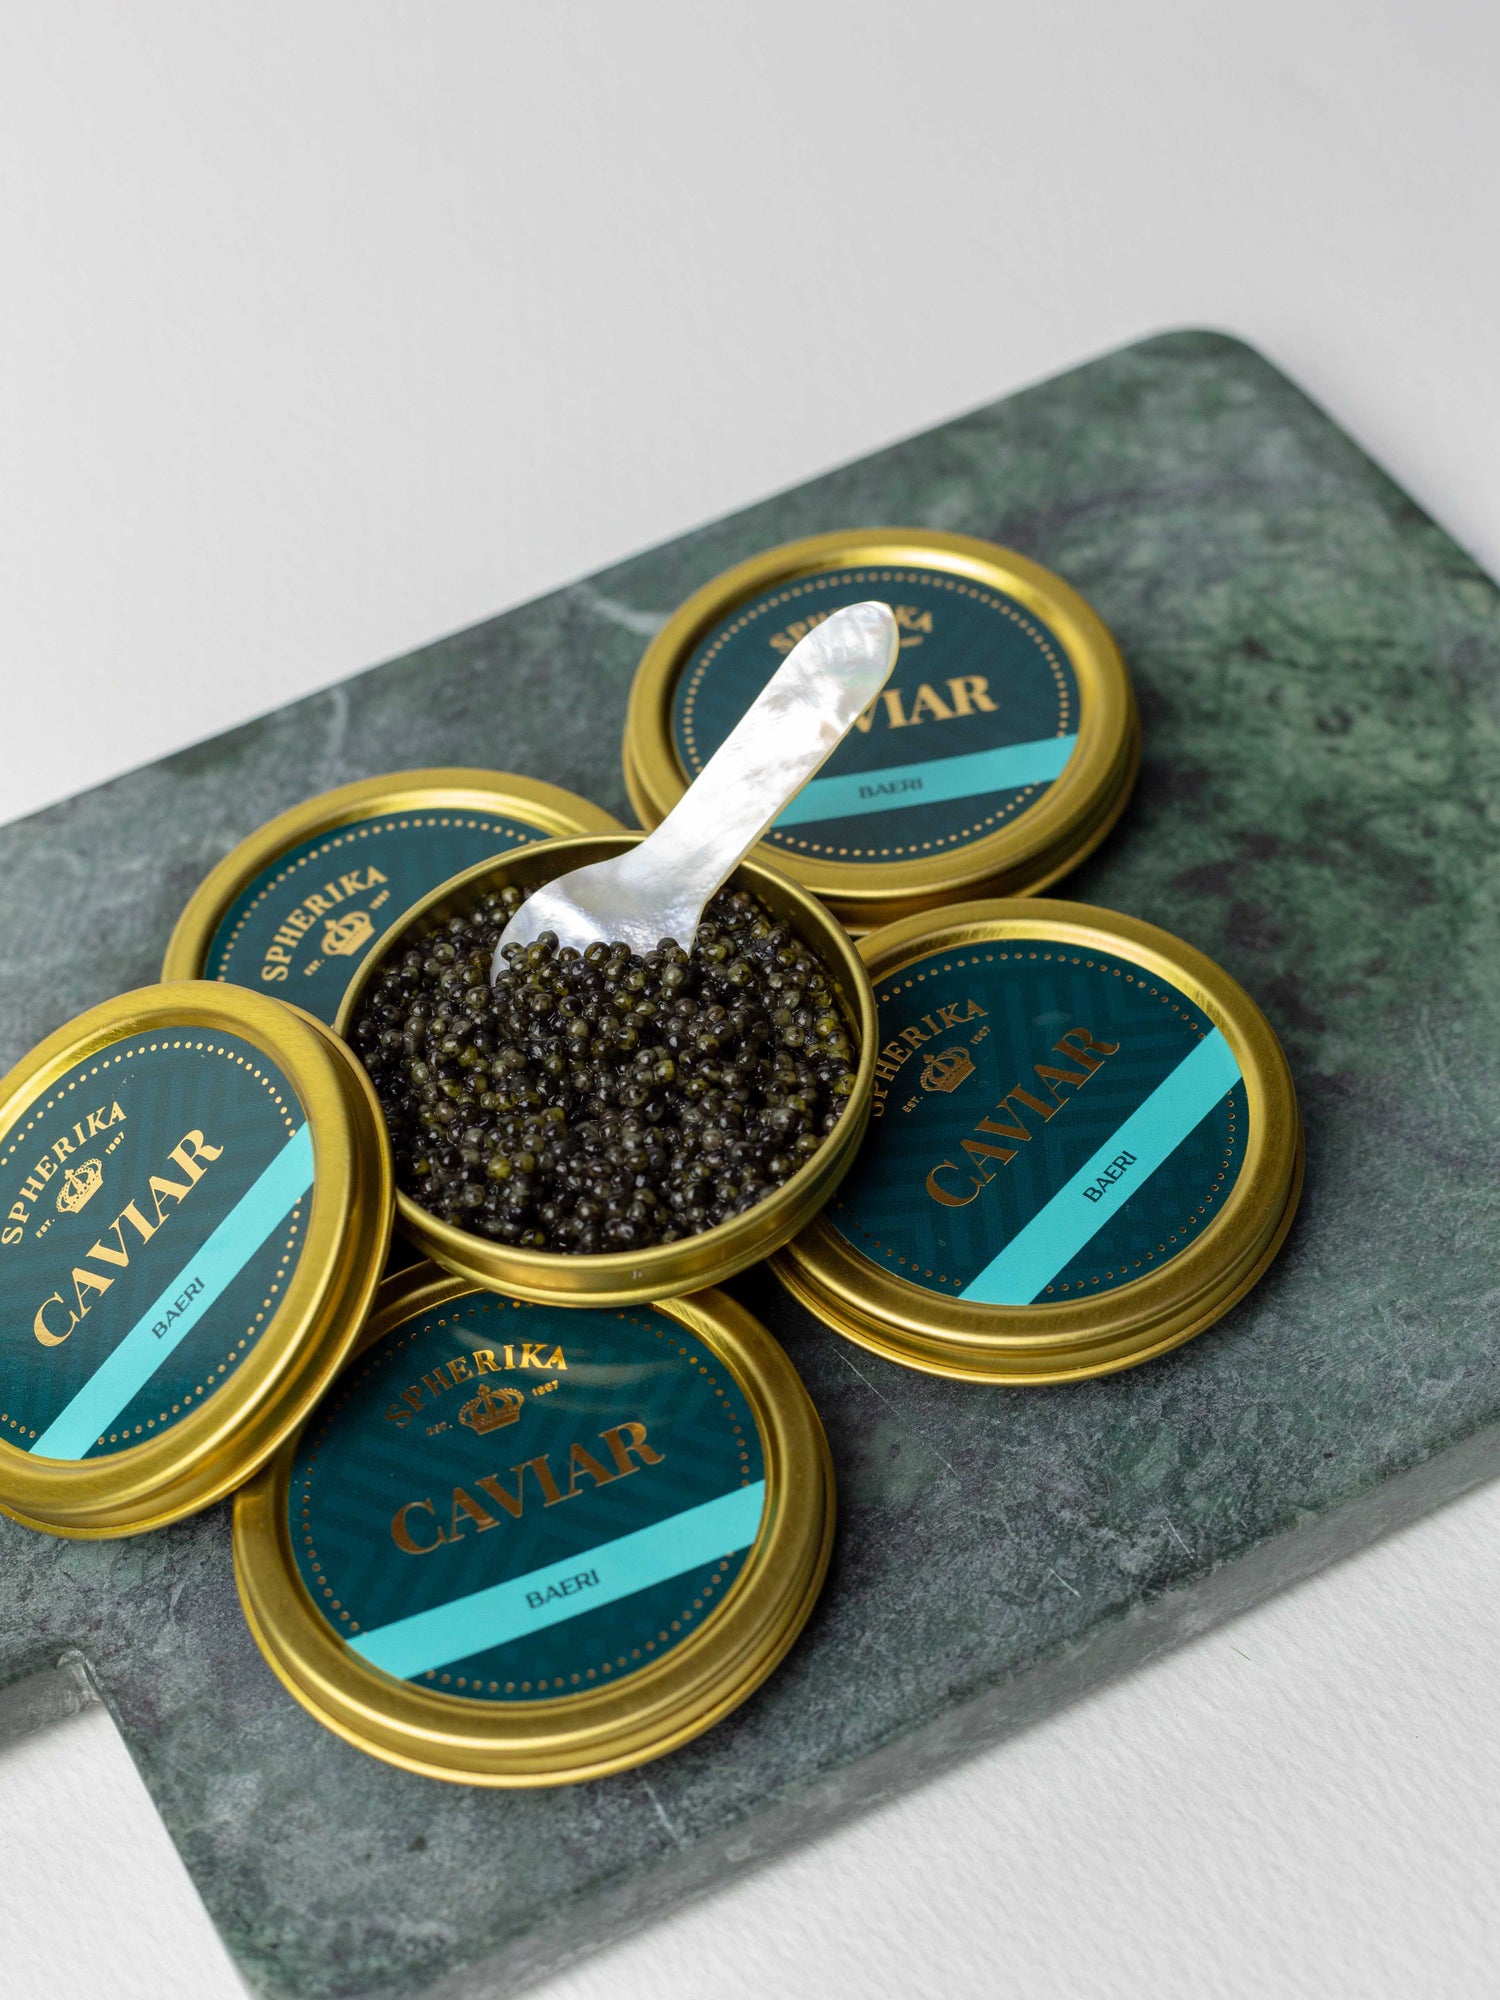 Caviar de esturión